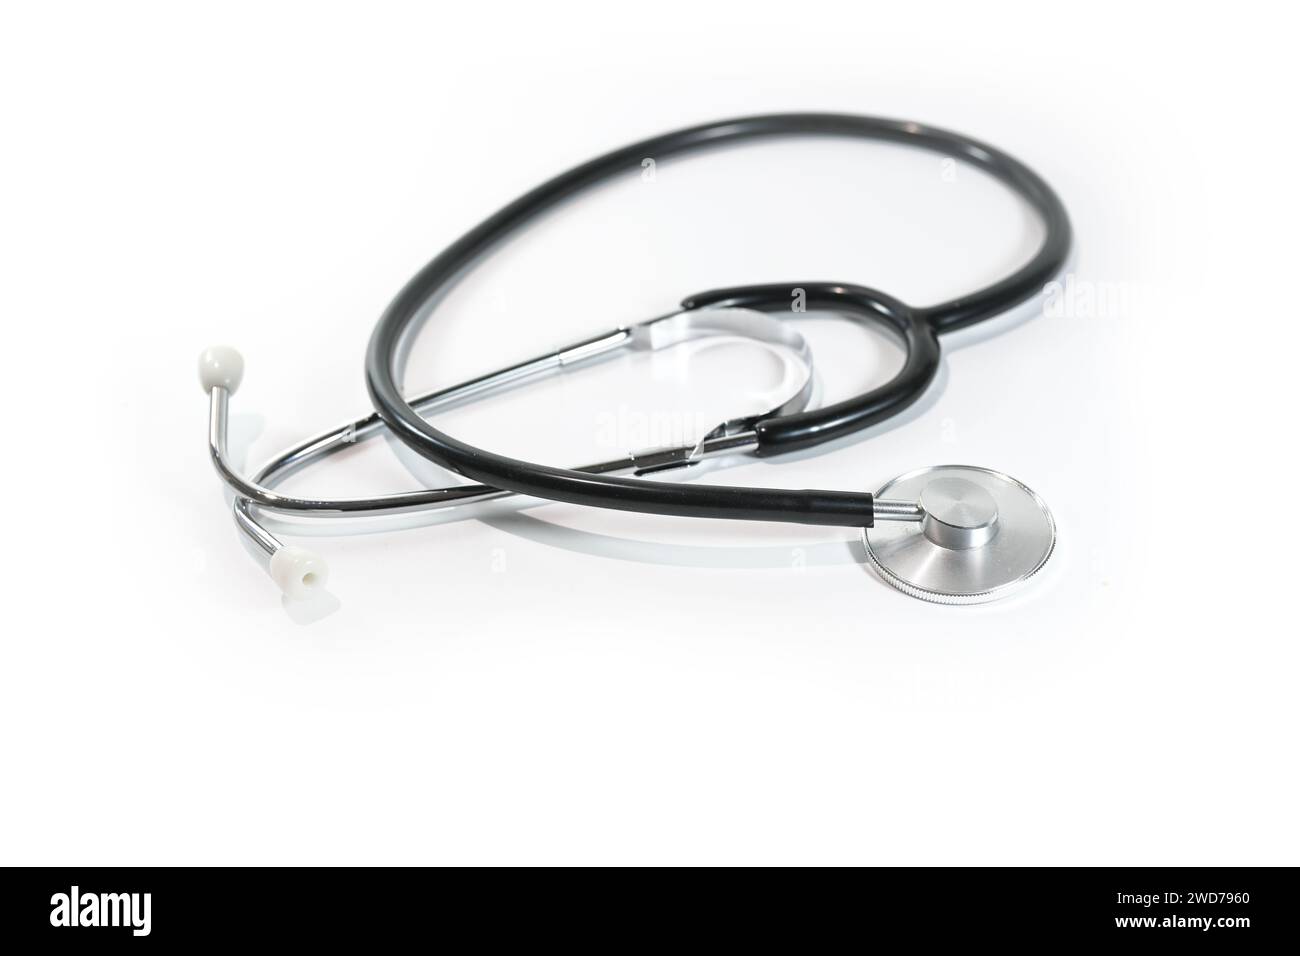 Stethoskop auf weißem Hintergrund, medizinisches Diagnosegerät für Auskultation oder Hören von internen Körpergeräuschen, Gesundheitskonzept, Kopierraum, Stockfoto